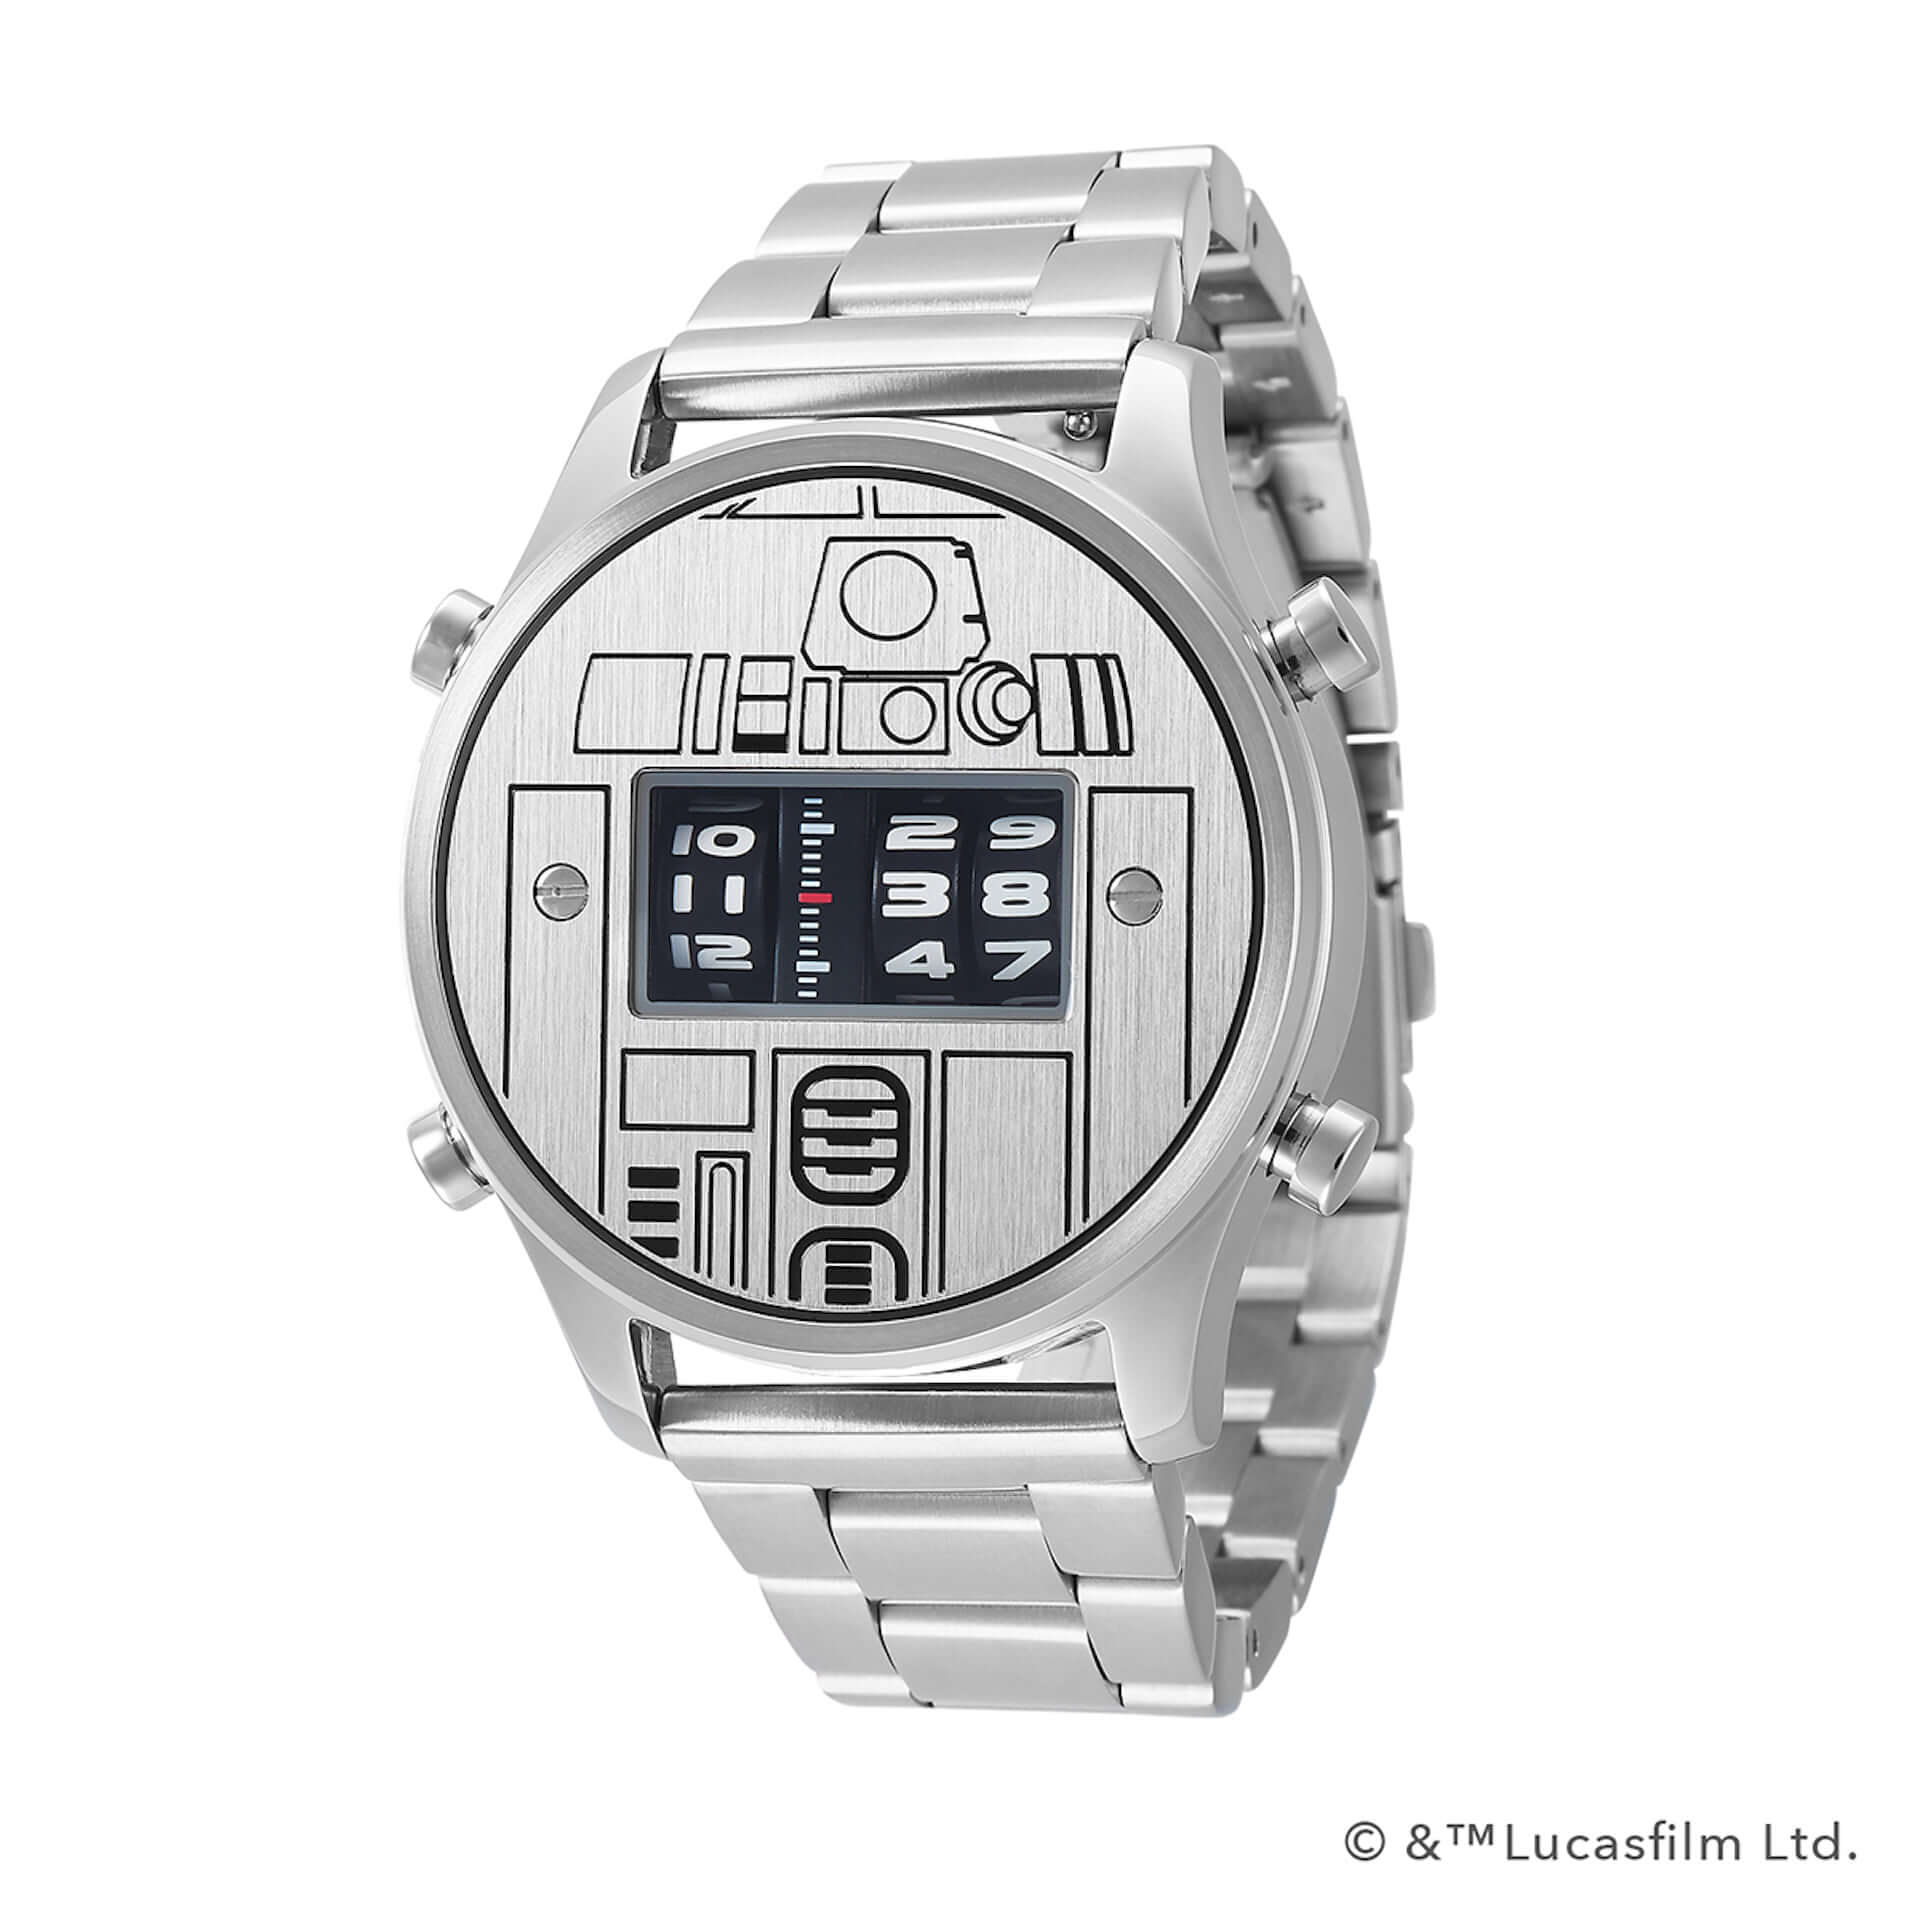 R2-D2＆C-3PO、ダース・ベイダーがローラー式腕時計に！『スター・ウォーズ』×「FUTURE FUNK」オリジナルデザインが登場 lifefashion191004_futurefunk_2-1920x1920